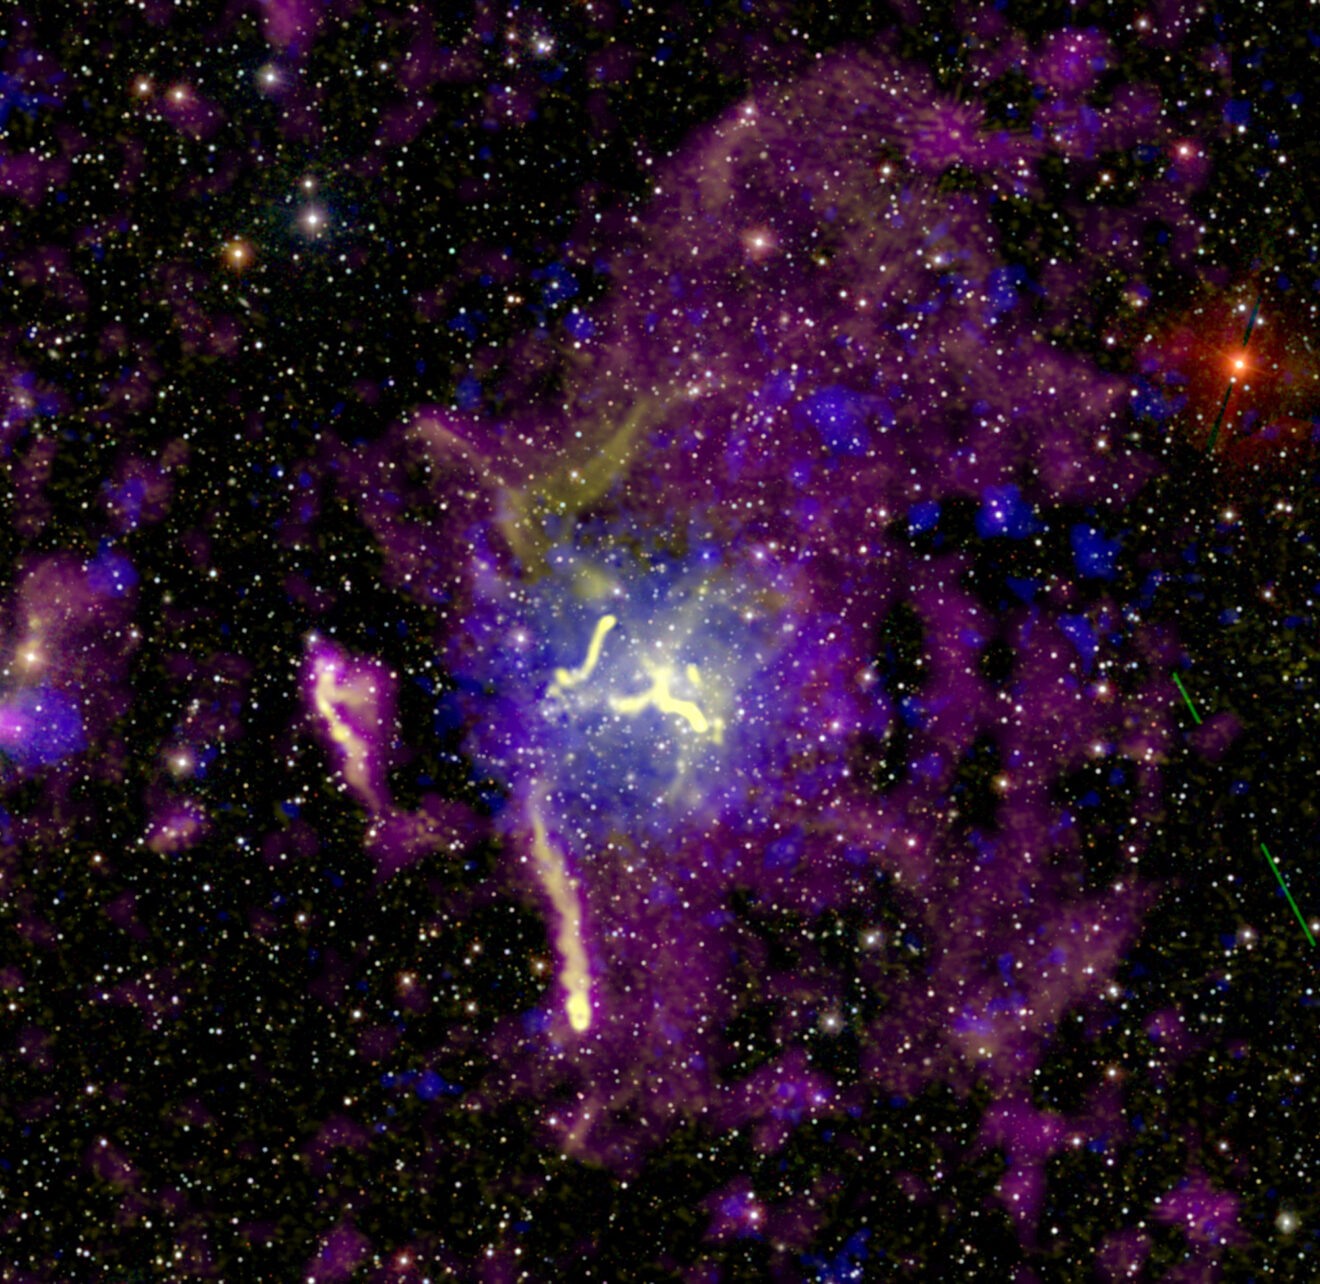 LOFAR-antennes onthullen gigantische gloed van radiostraling rond cluster van sterrenstelsels